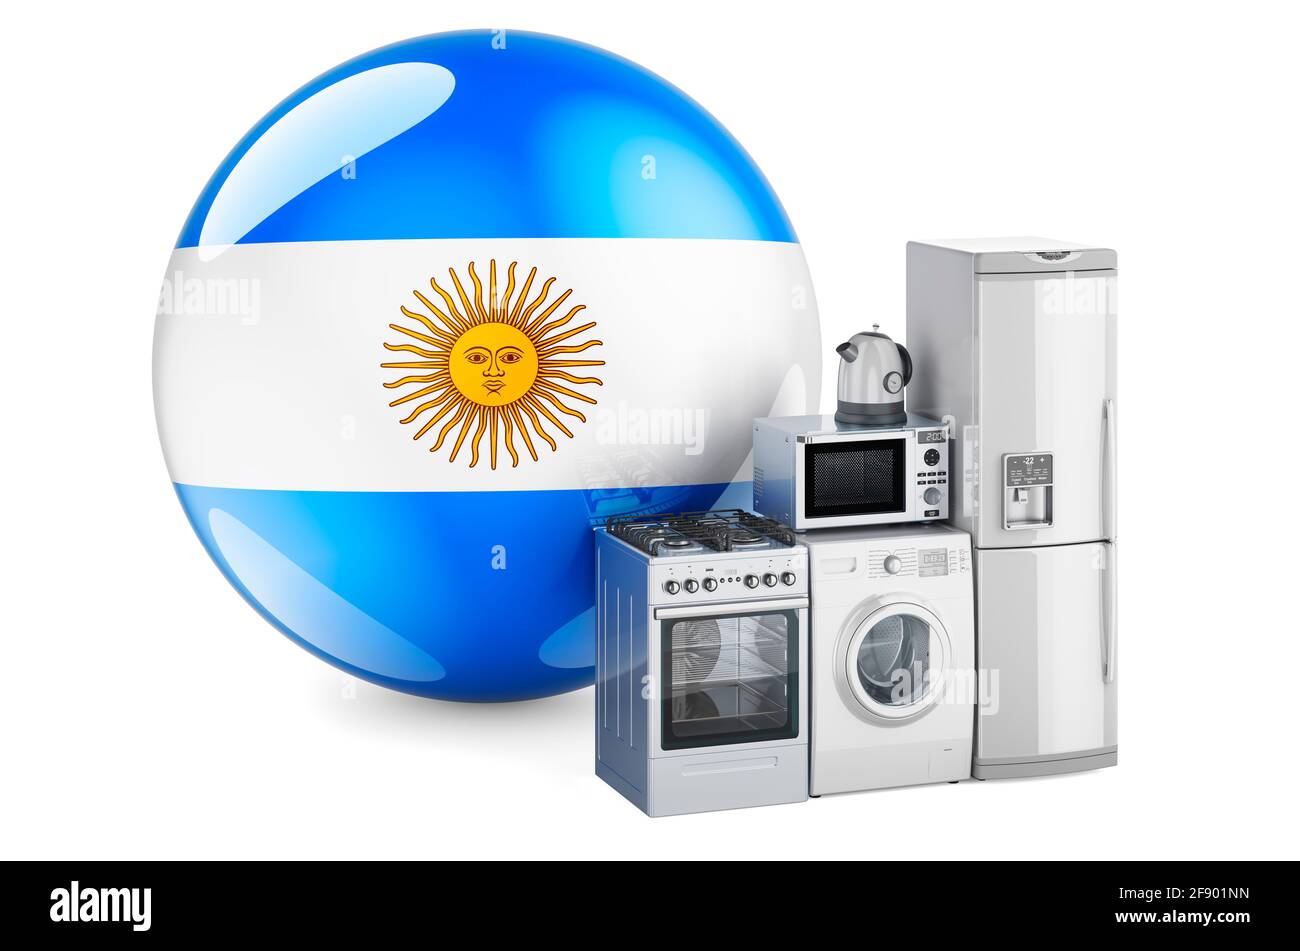 Cuisine et appareils électroménagers avec drapeau argentin. Production, achat et livraison d'appareils électroménagers en Argentine concept. Isolat de rendu 3D Banque D'Images